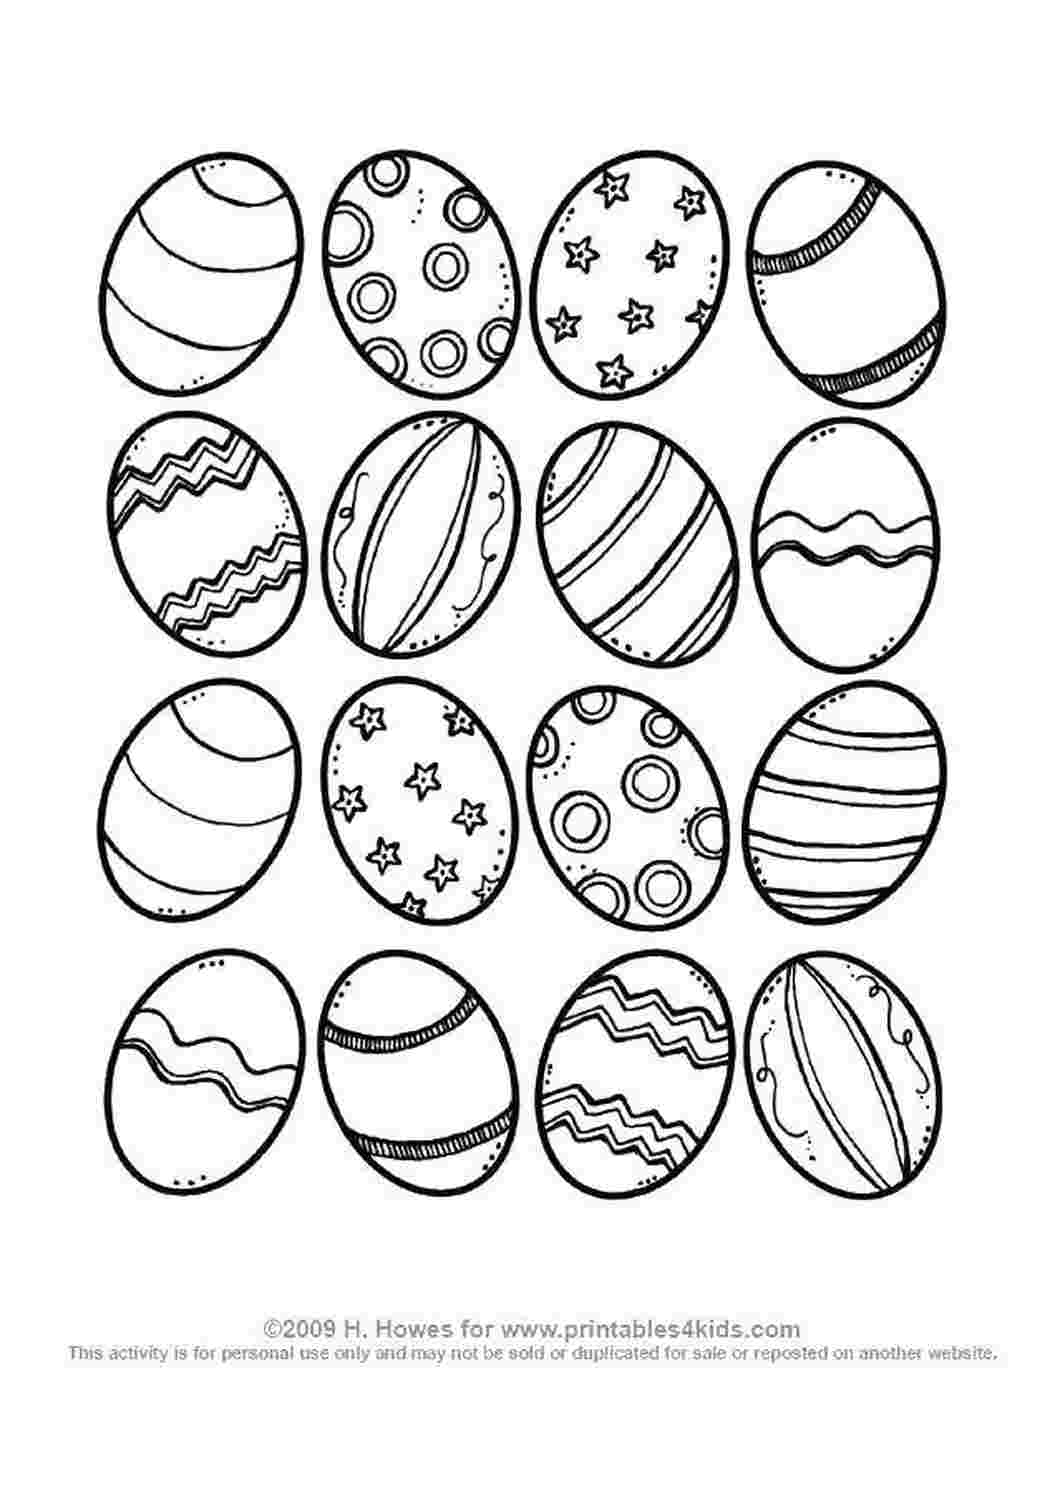 Раскраски Пасхальные яички с красивыми узорчиками Узоры для раскрашивания яиц Пасха, яйца, узоры